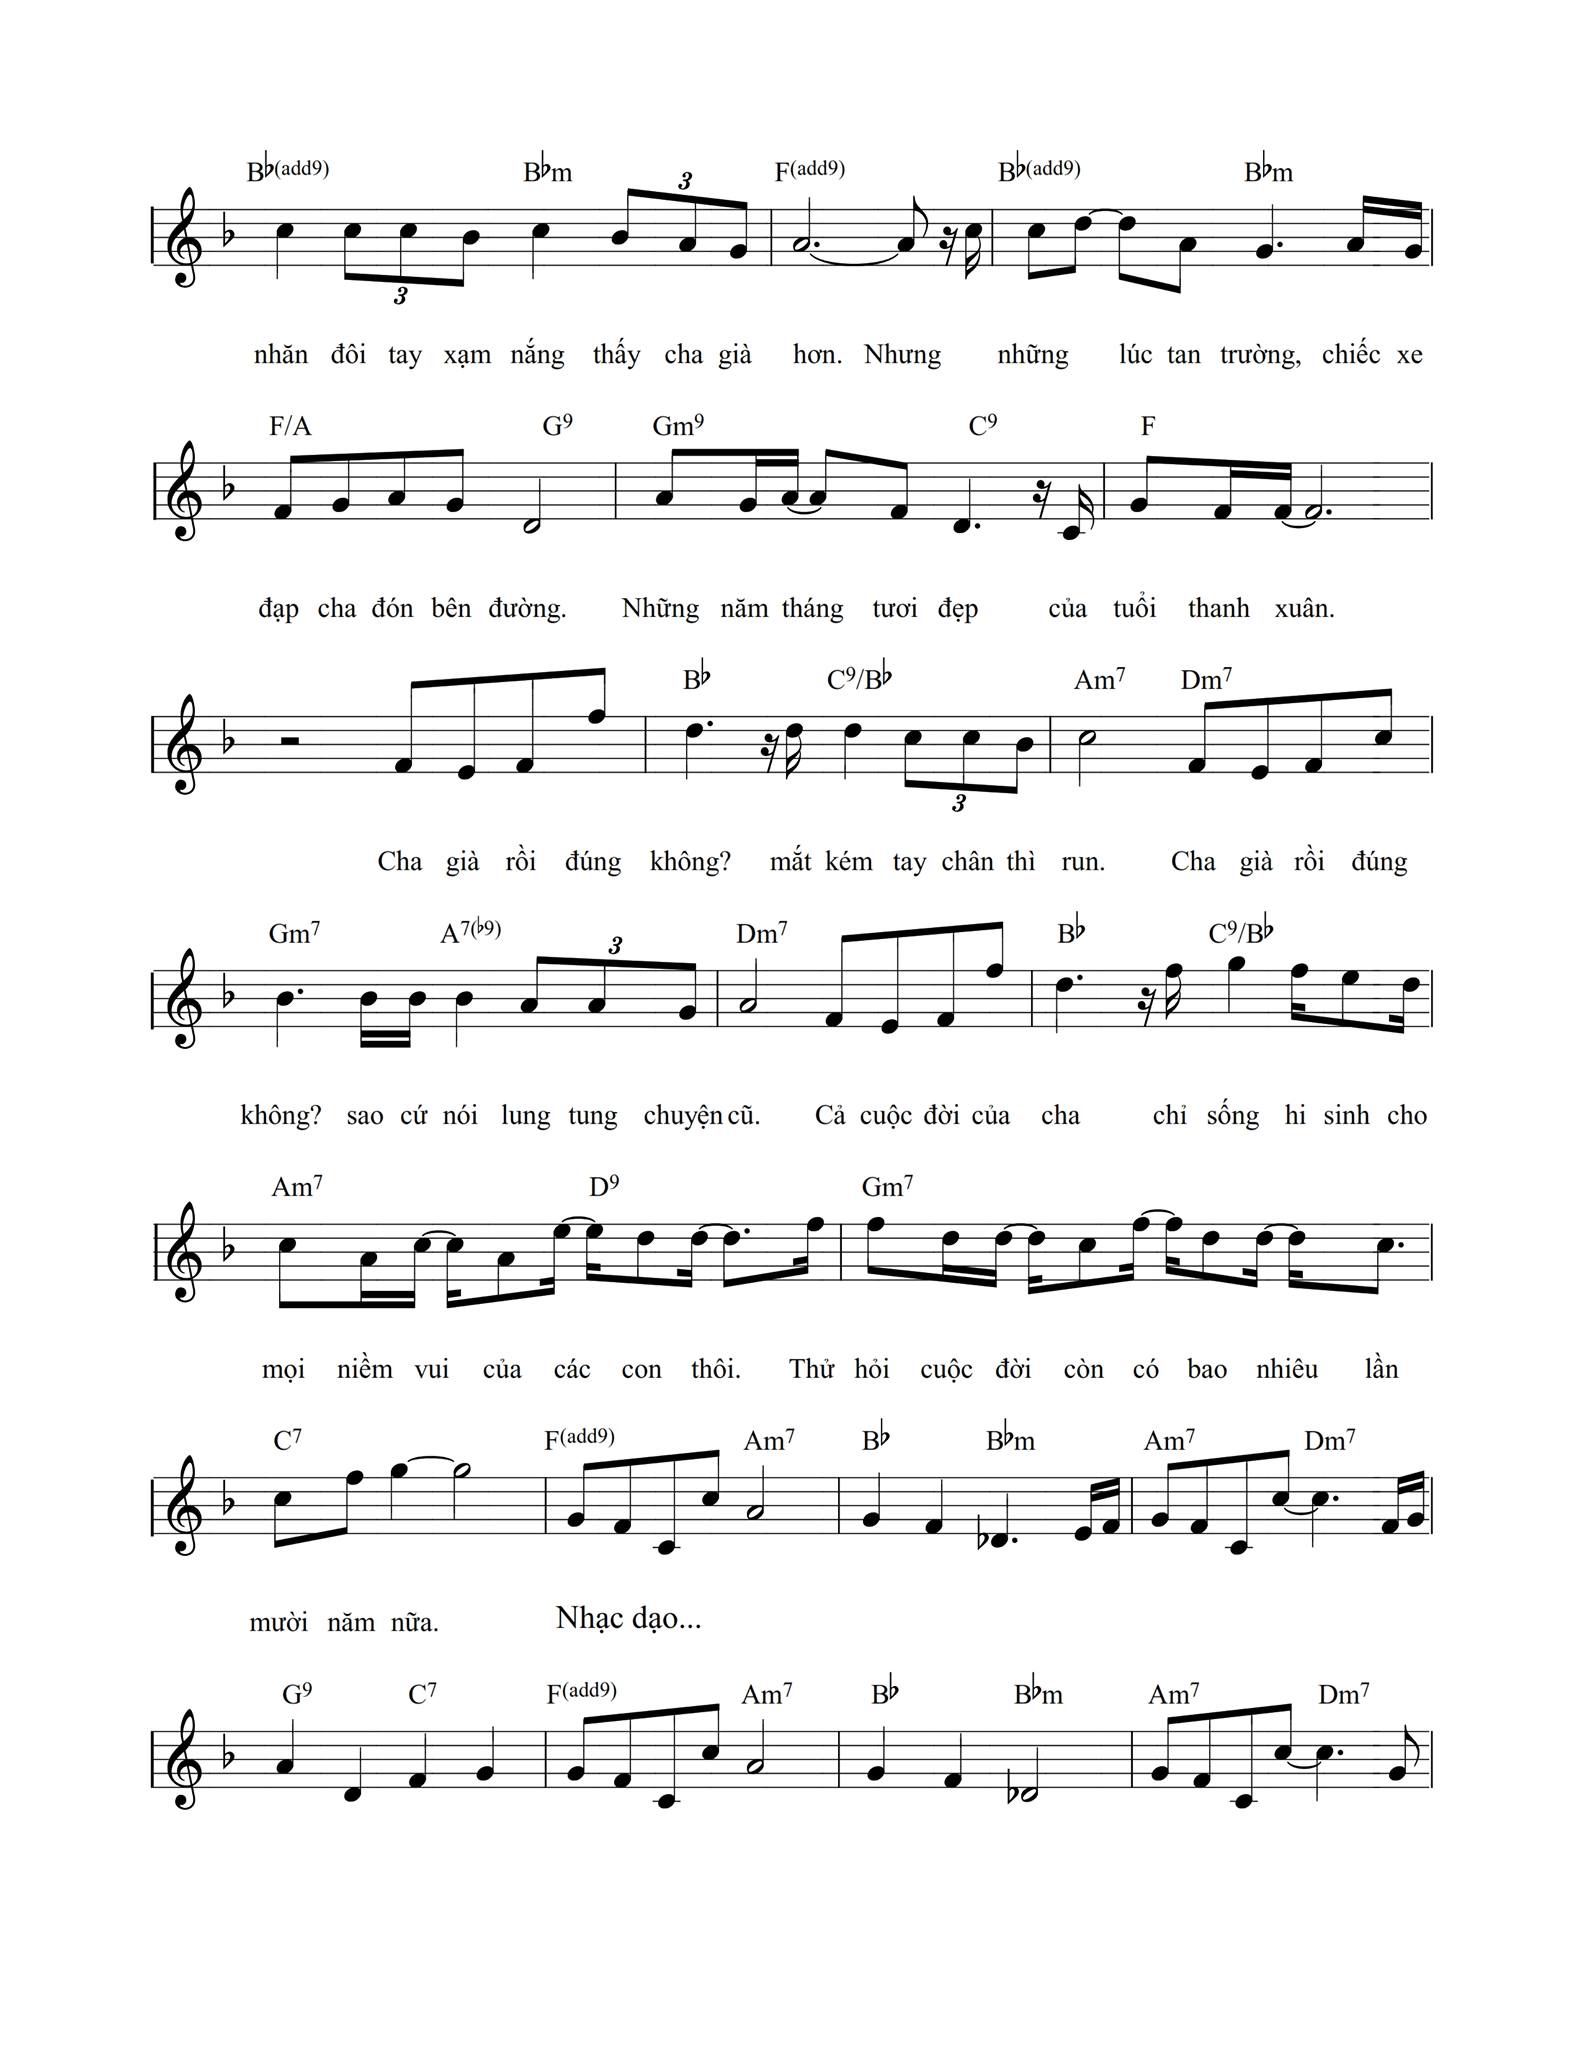 sheet-piano-cha-gia-roi-dung-khong-4